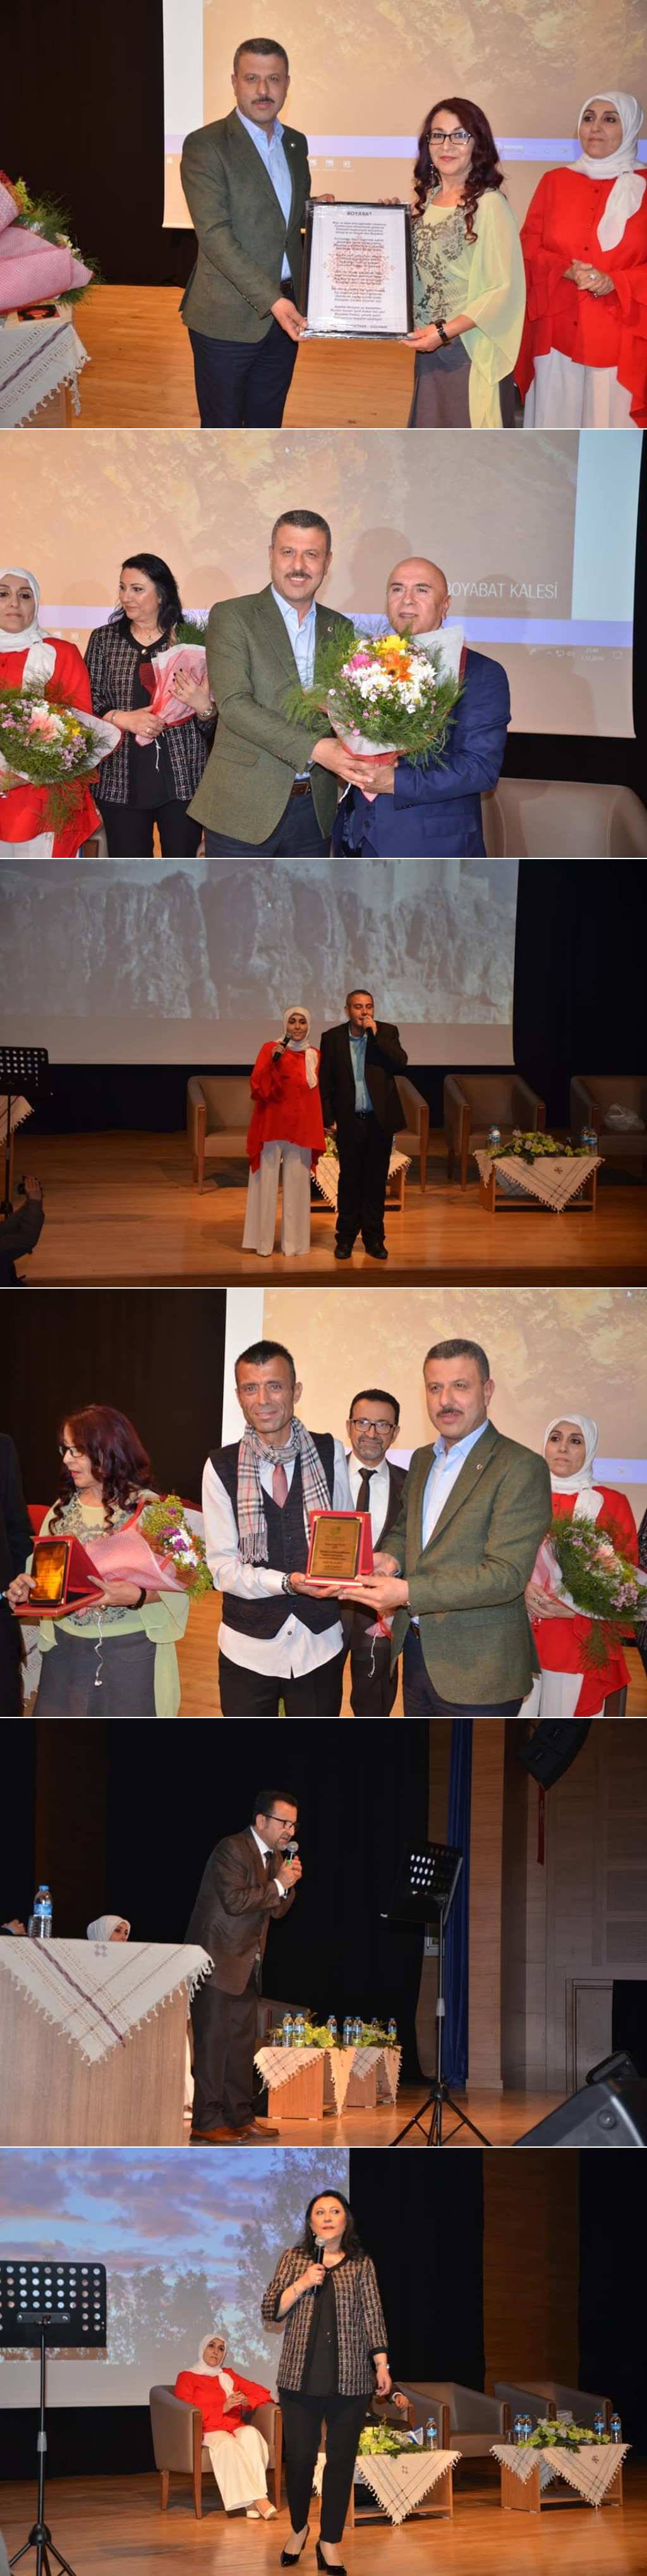 Boyabat Belediyesi Kültür ve Sanat etkinlikleri kapsamında bu yıl 2.'si düzenlenen "Şiir Dinletisi ve Söyleşi" programı yapıldı.